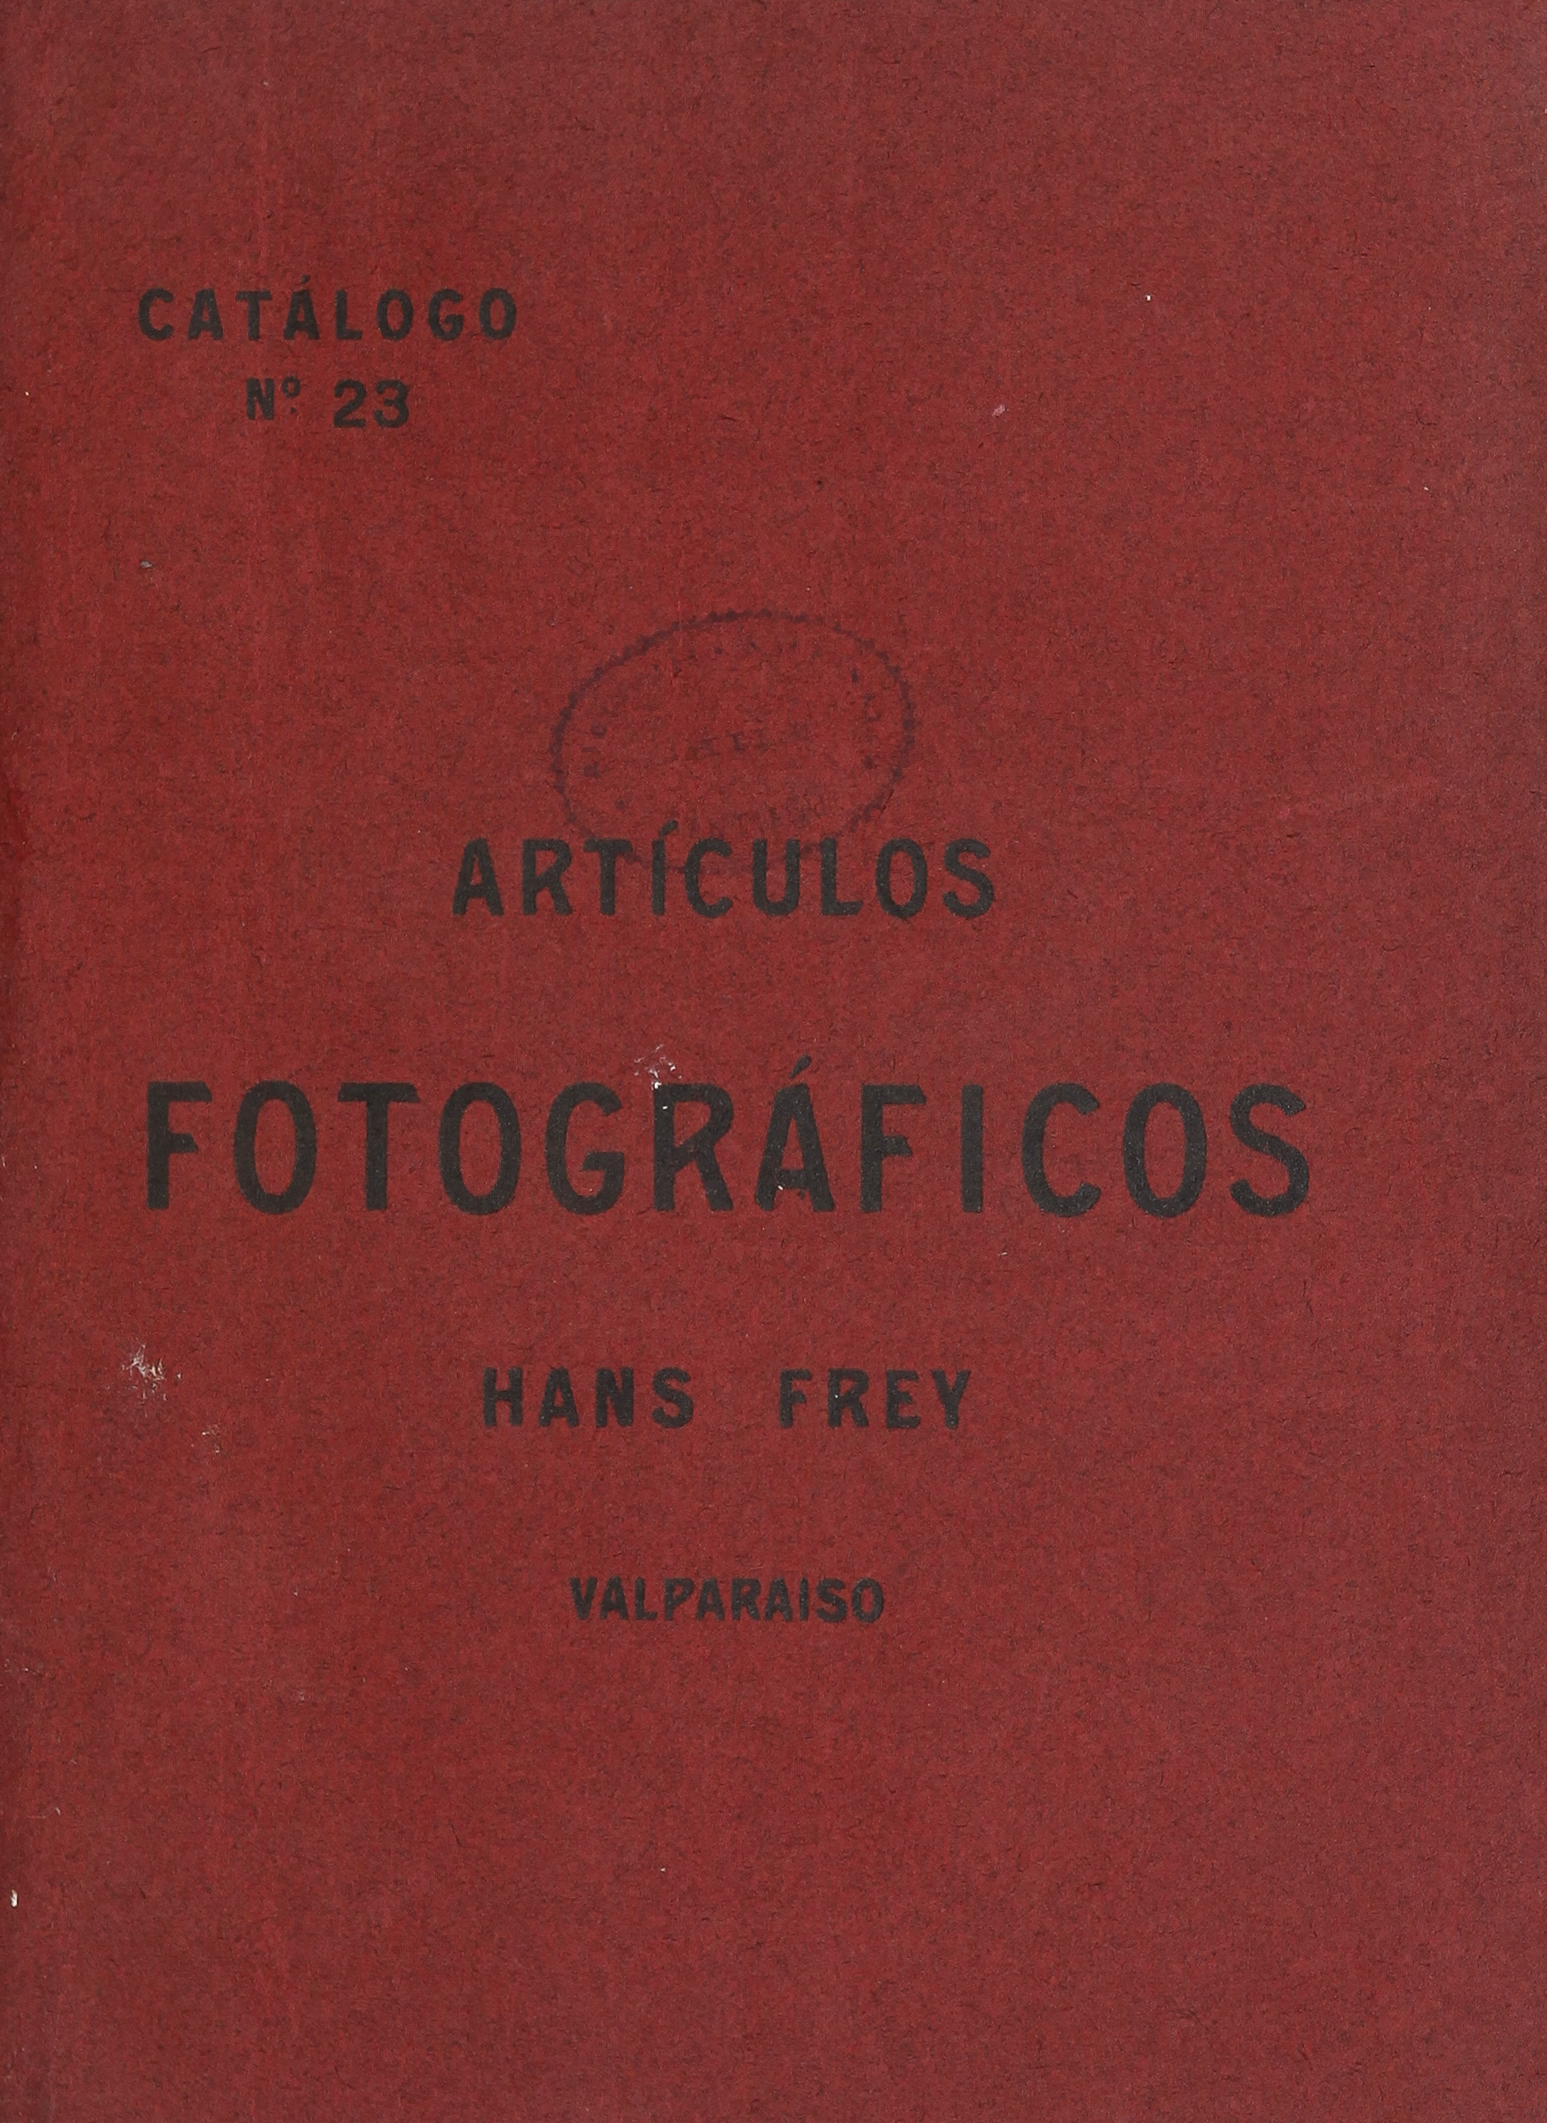 Artículos fotográficos de Hans Frey. Catálogo N° 23